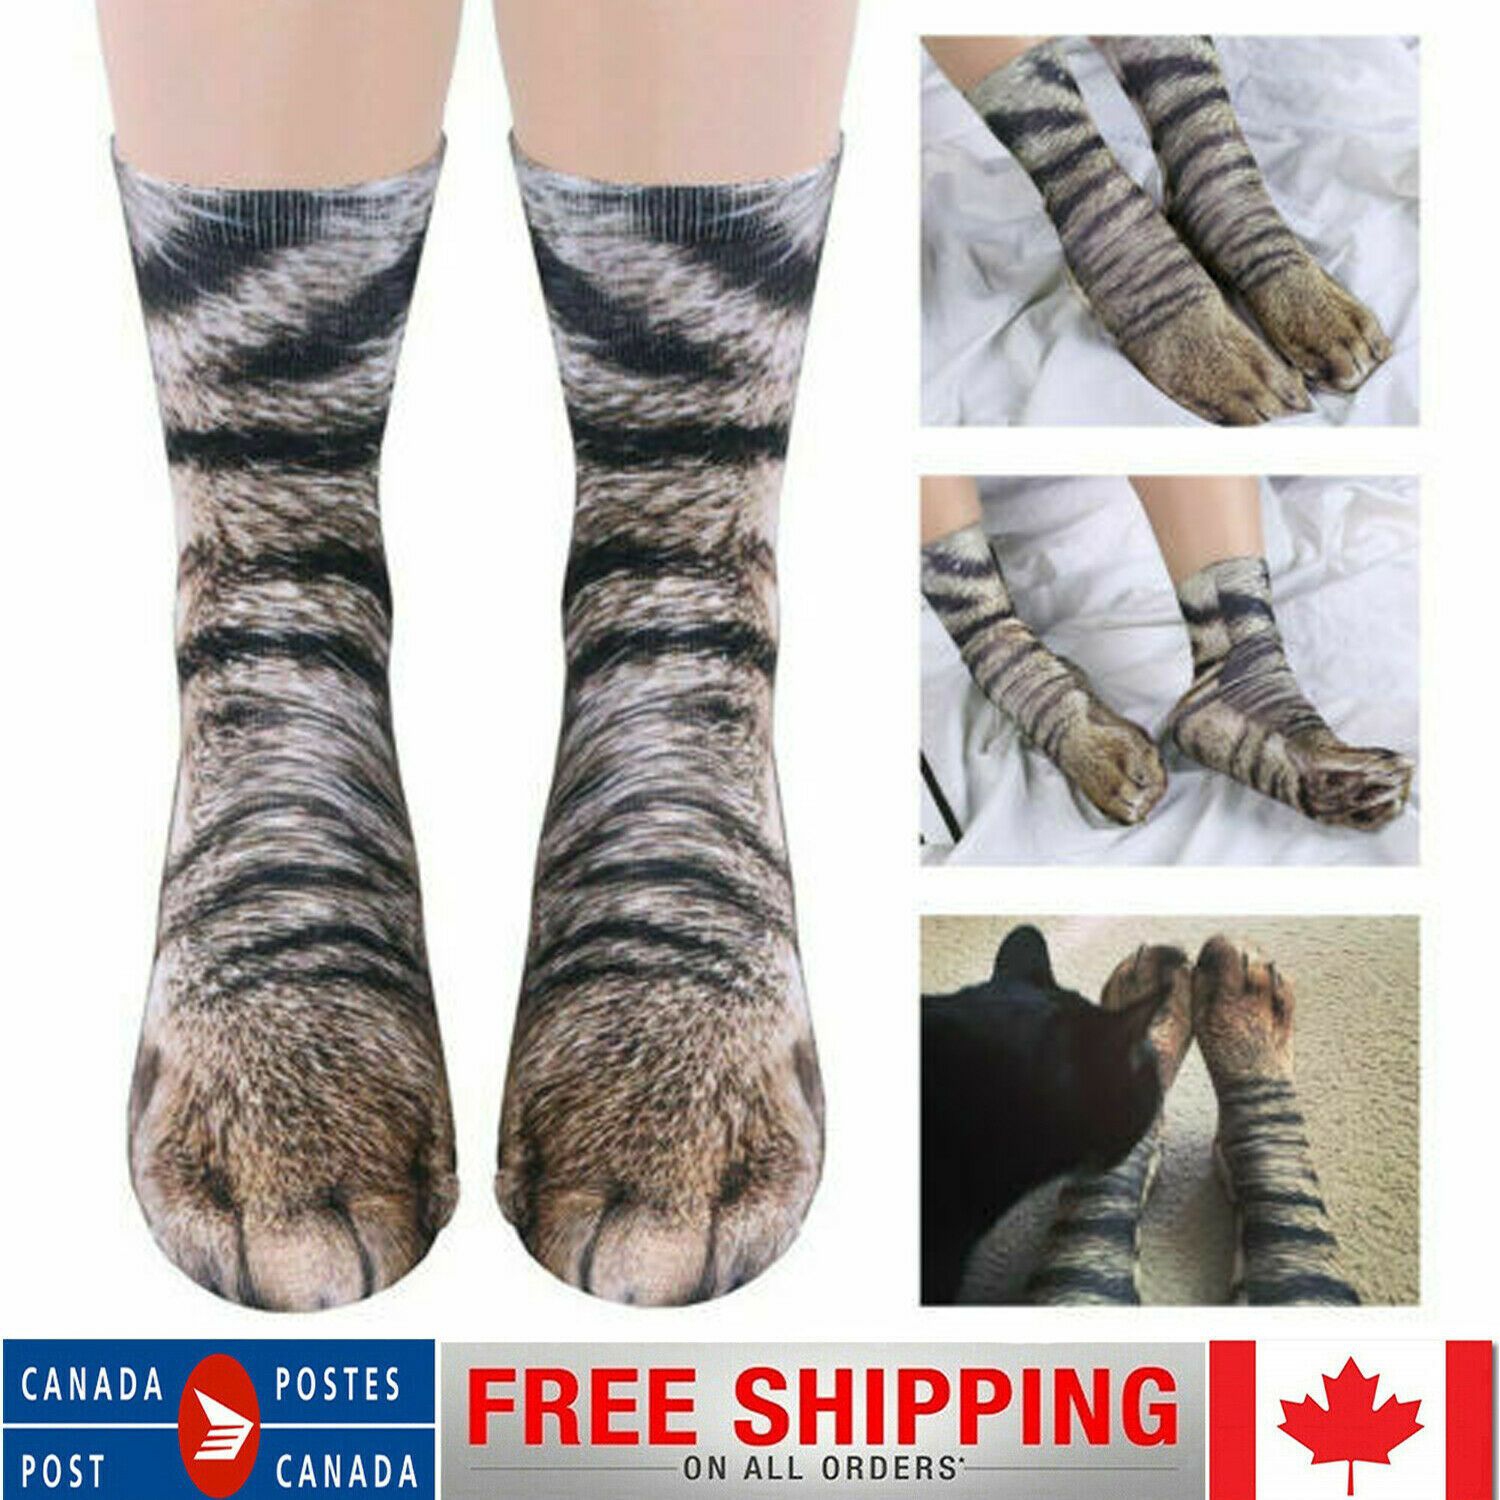 Unisex Animal Cat Paw Socks 3D Printed Crew Hoof Tube Funny For